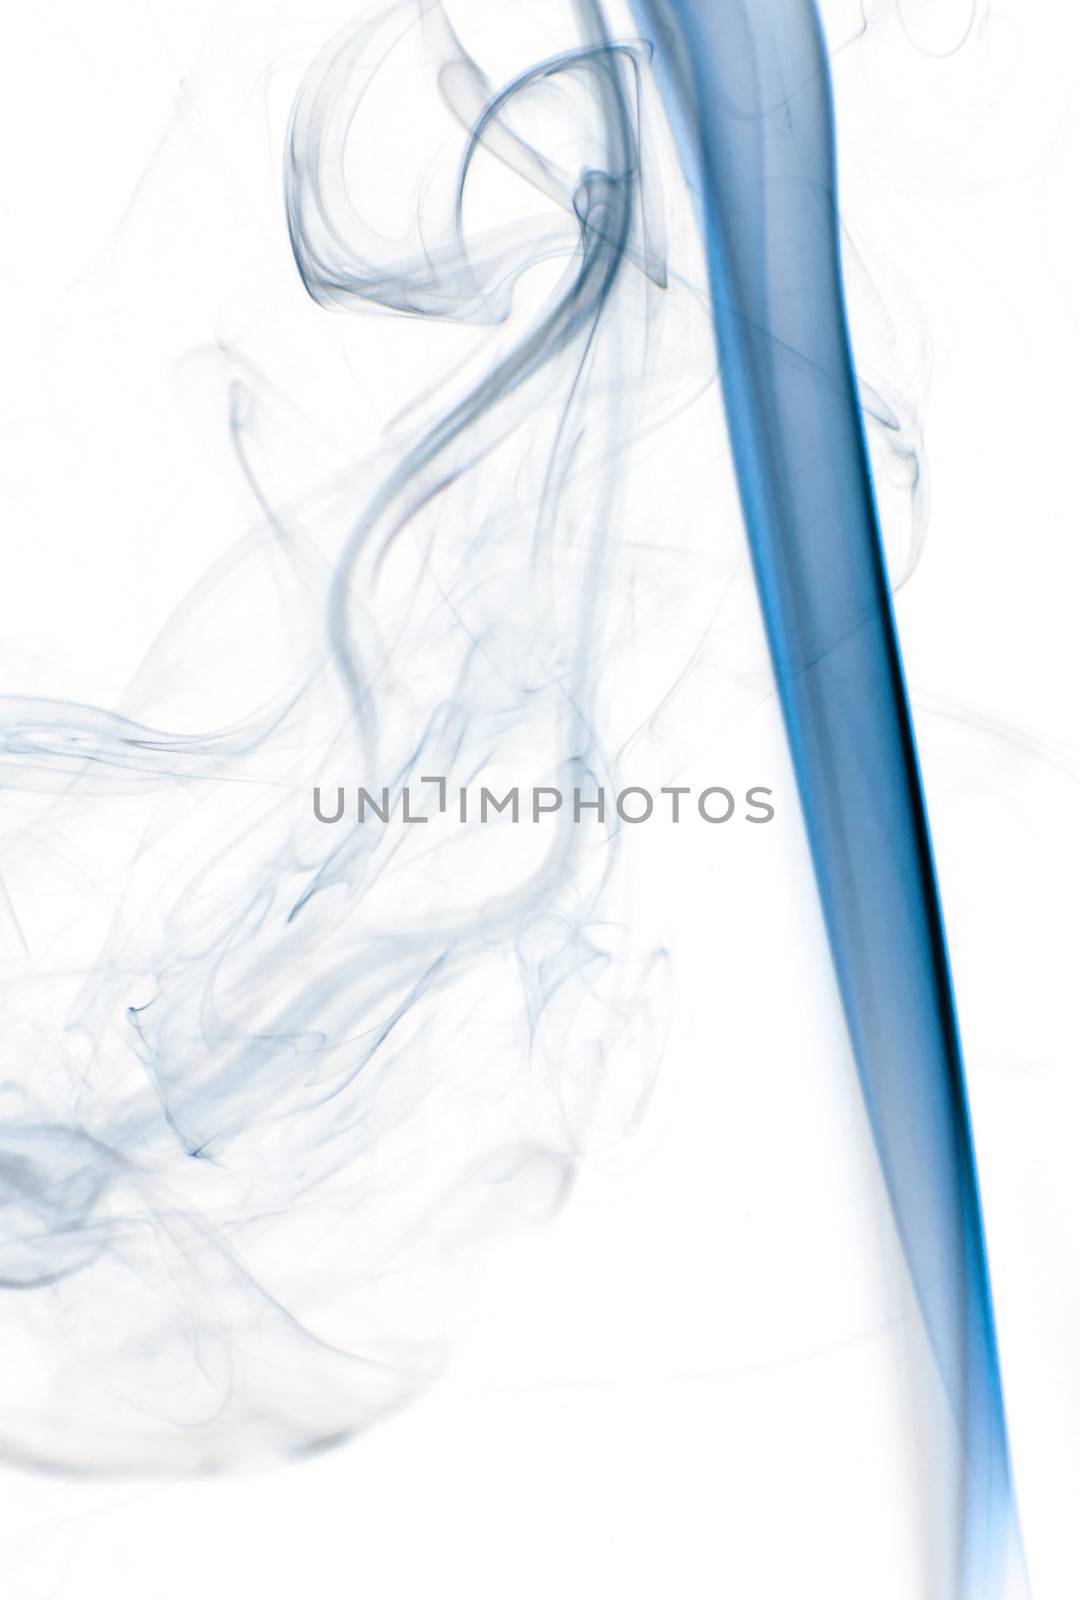 Blue insence smoke by richpav